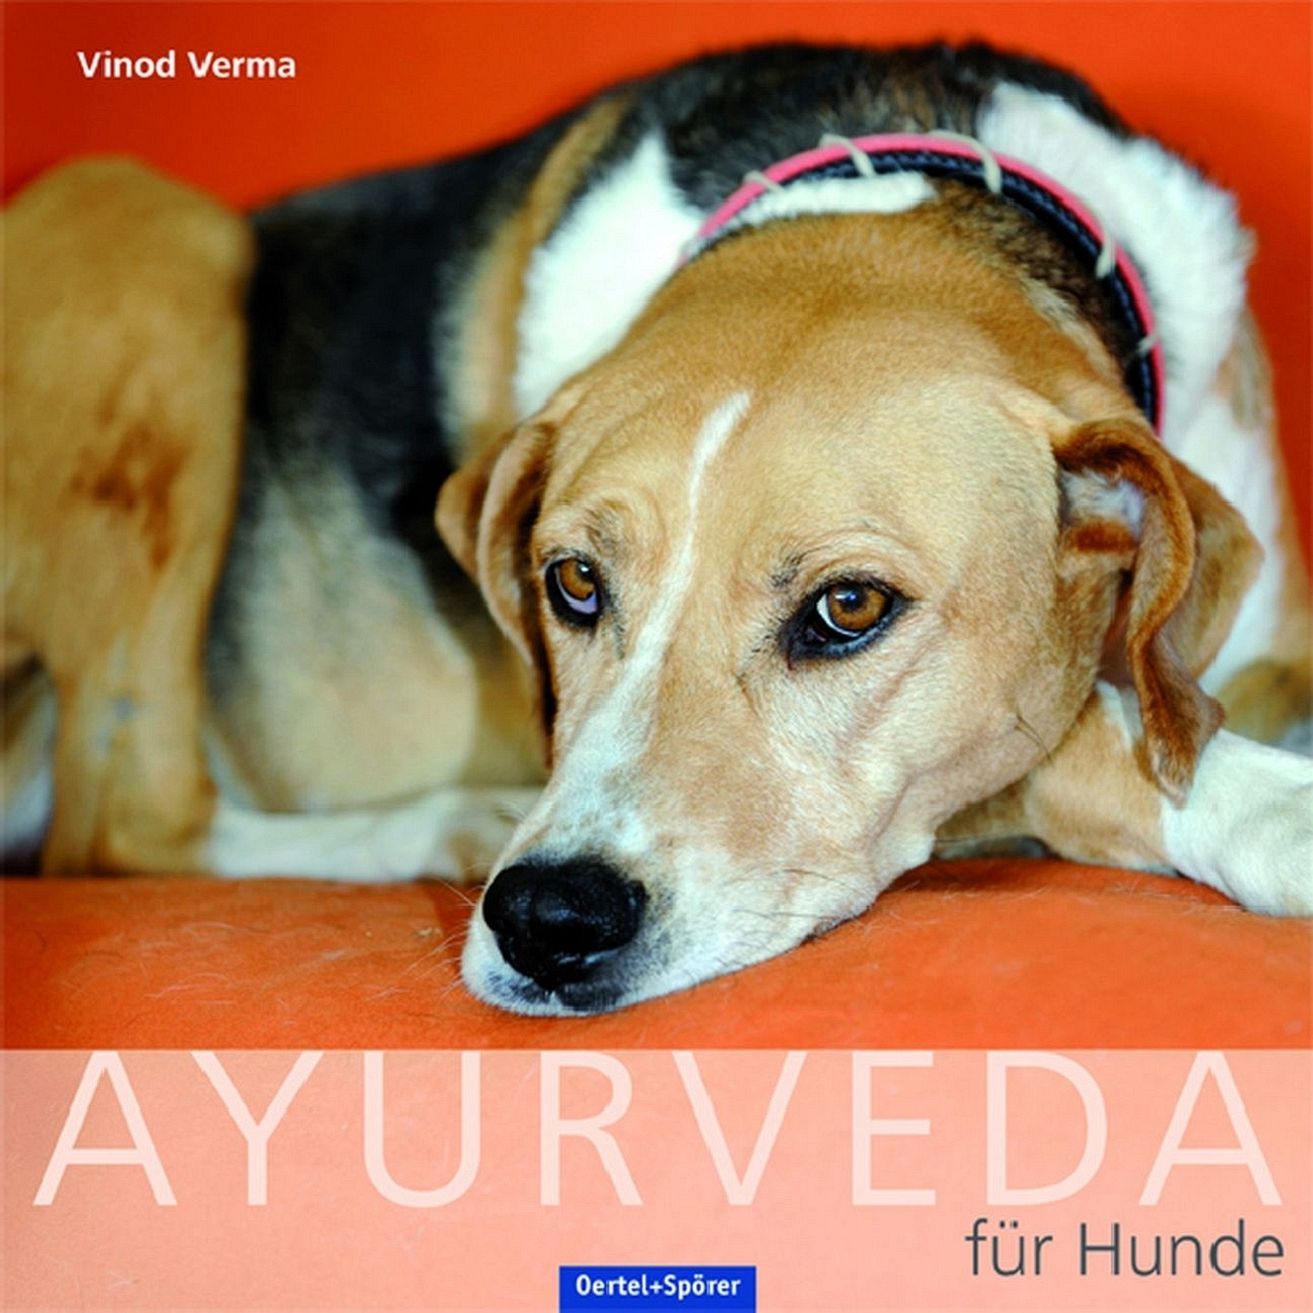 Ayurveda für den Hund Buch von Vinod Verma versandkostenfrei - Weltbild.de